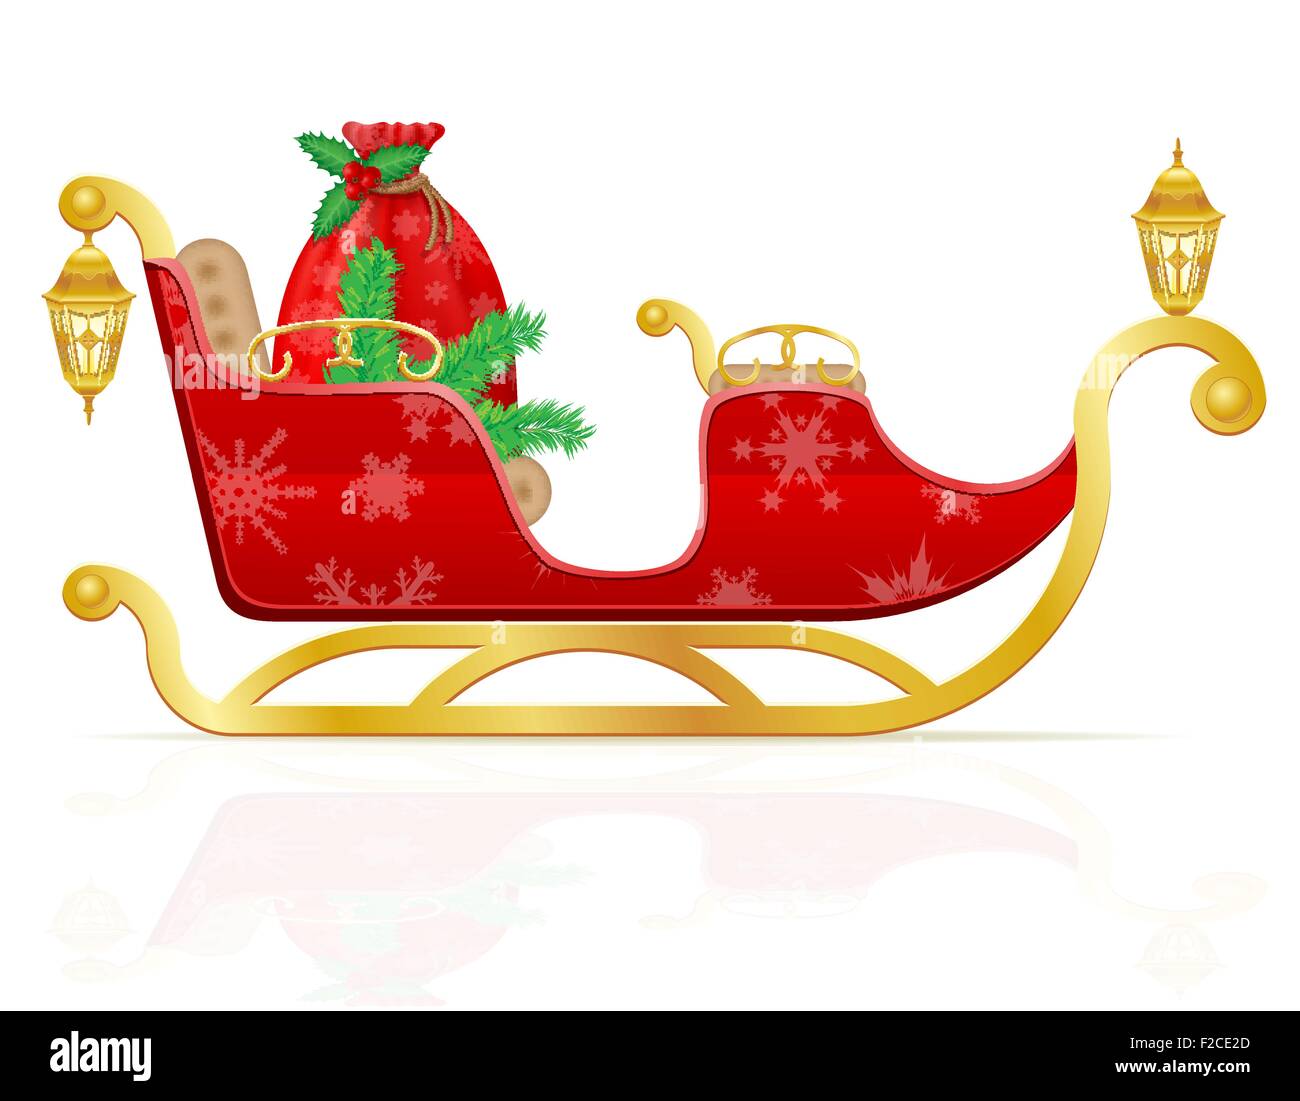 Traîneau de Noël rouge du père Noël avec des cadeaux vector illustration isolé sur fond blanc Illustration de Vecteur